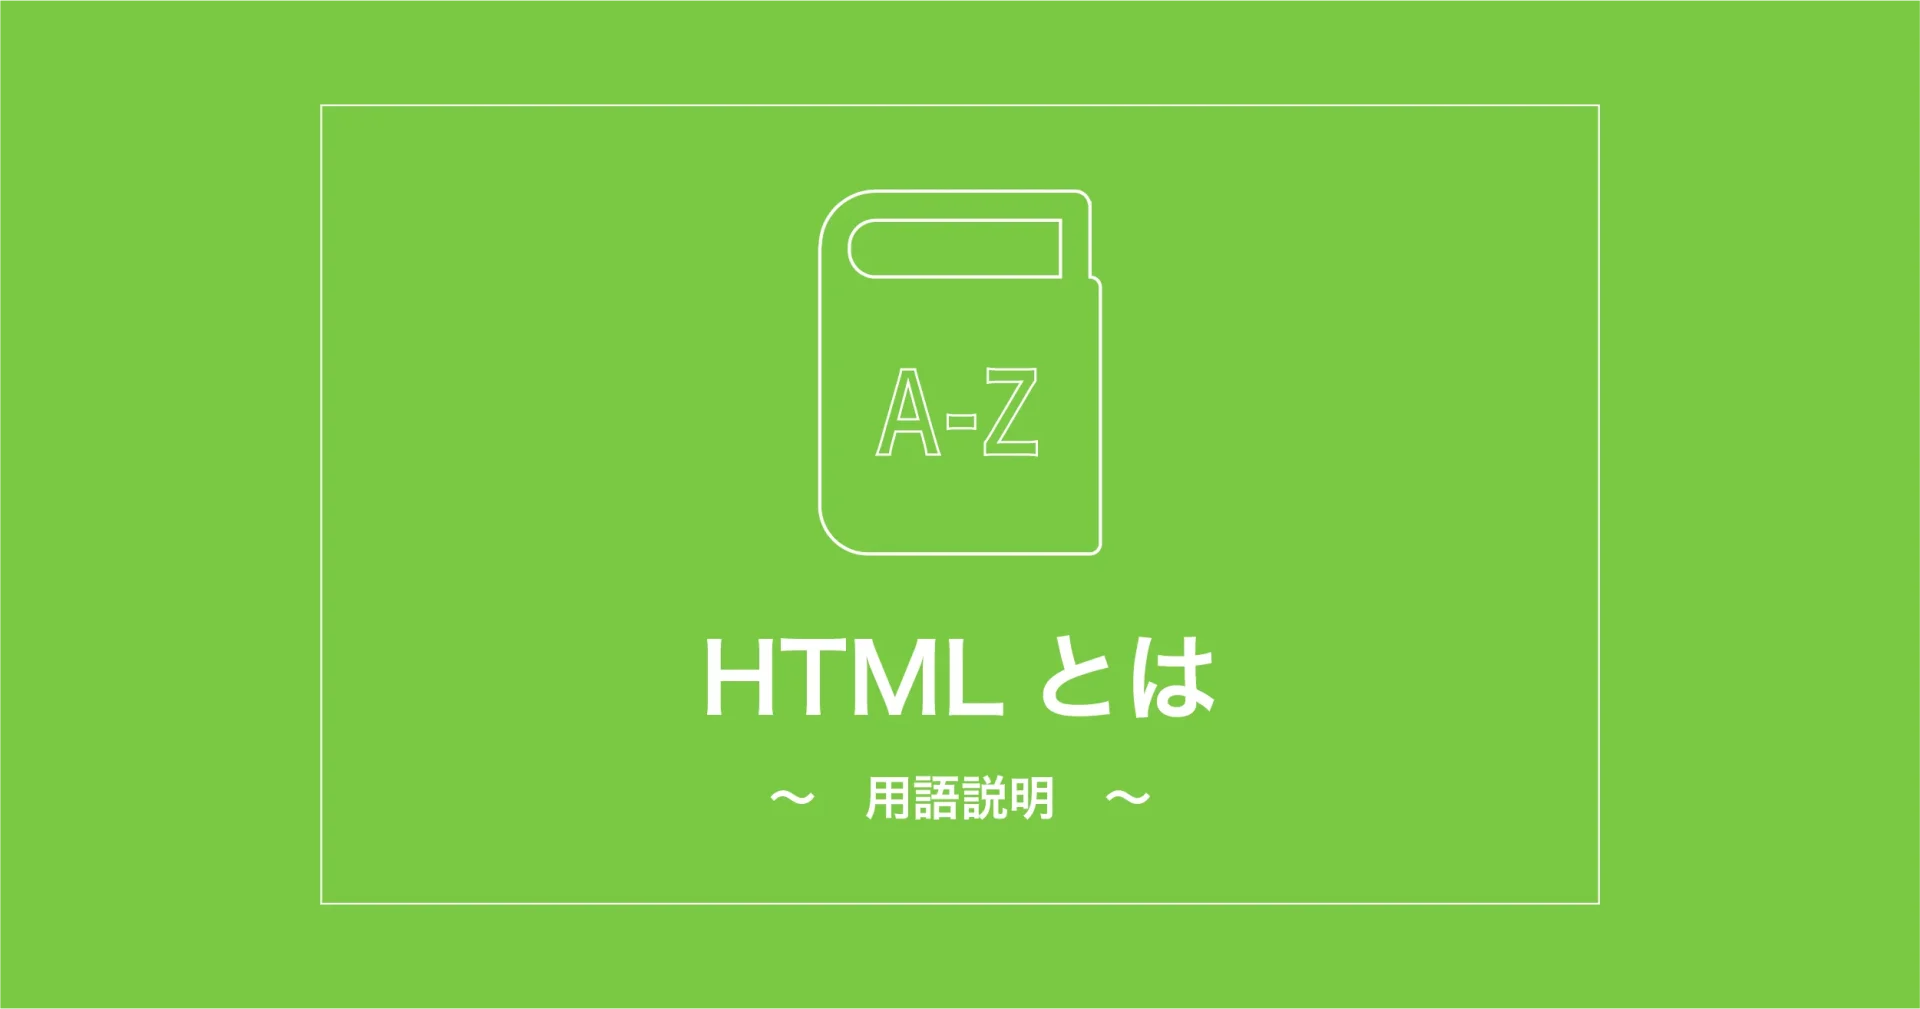 HTMLとは